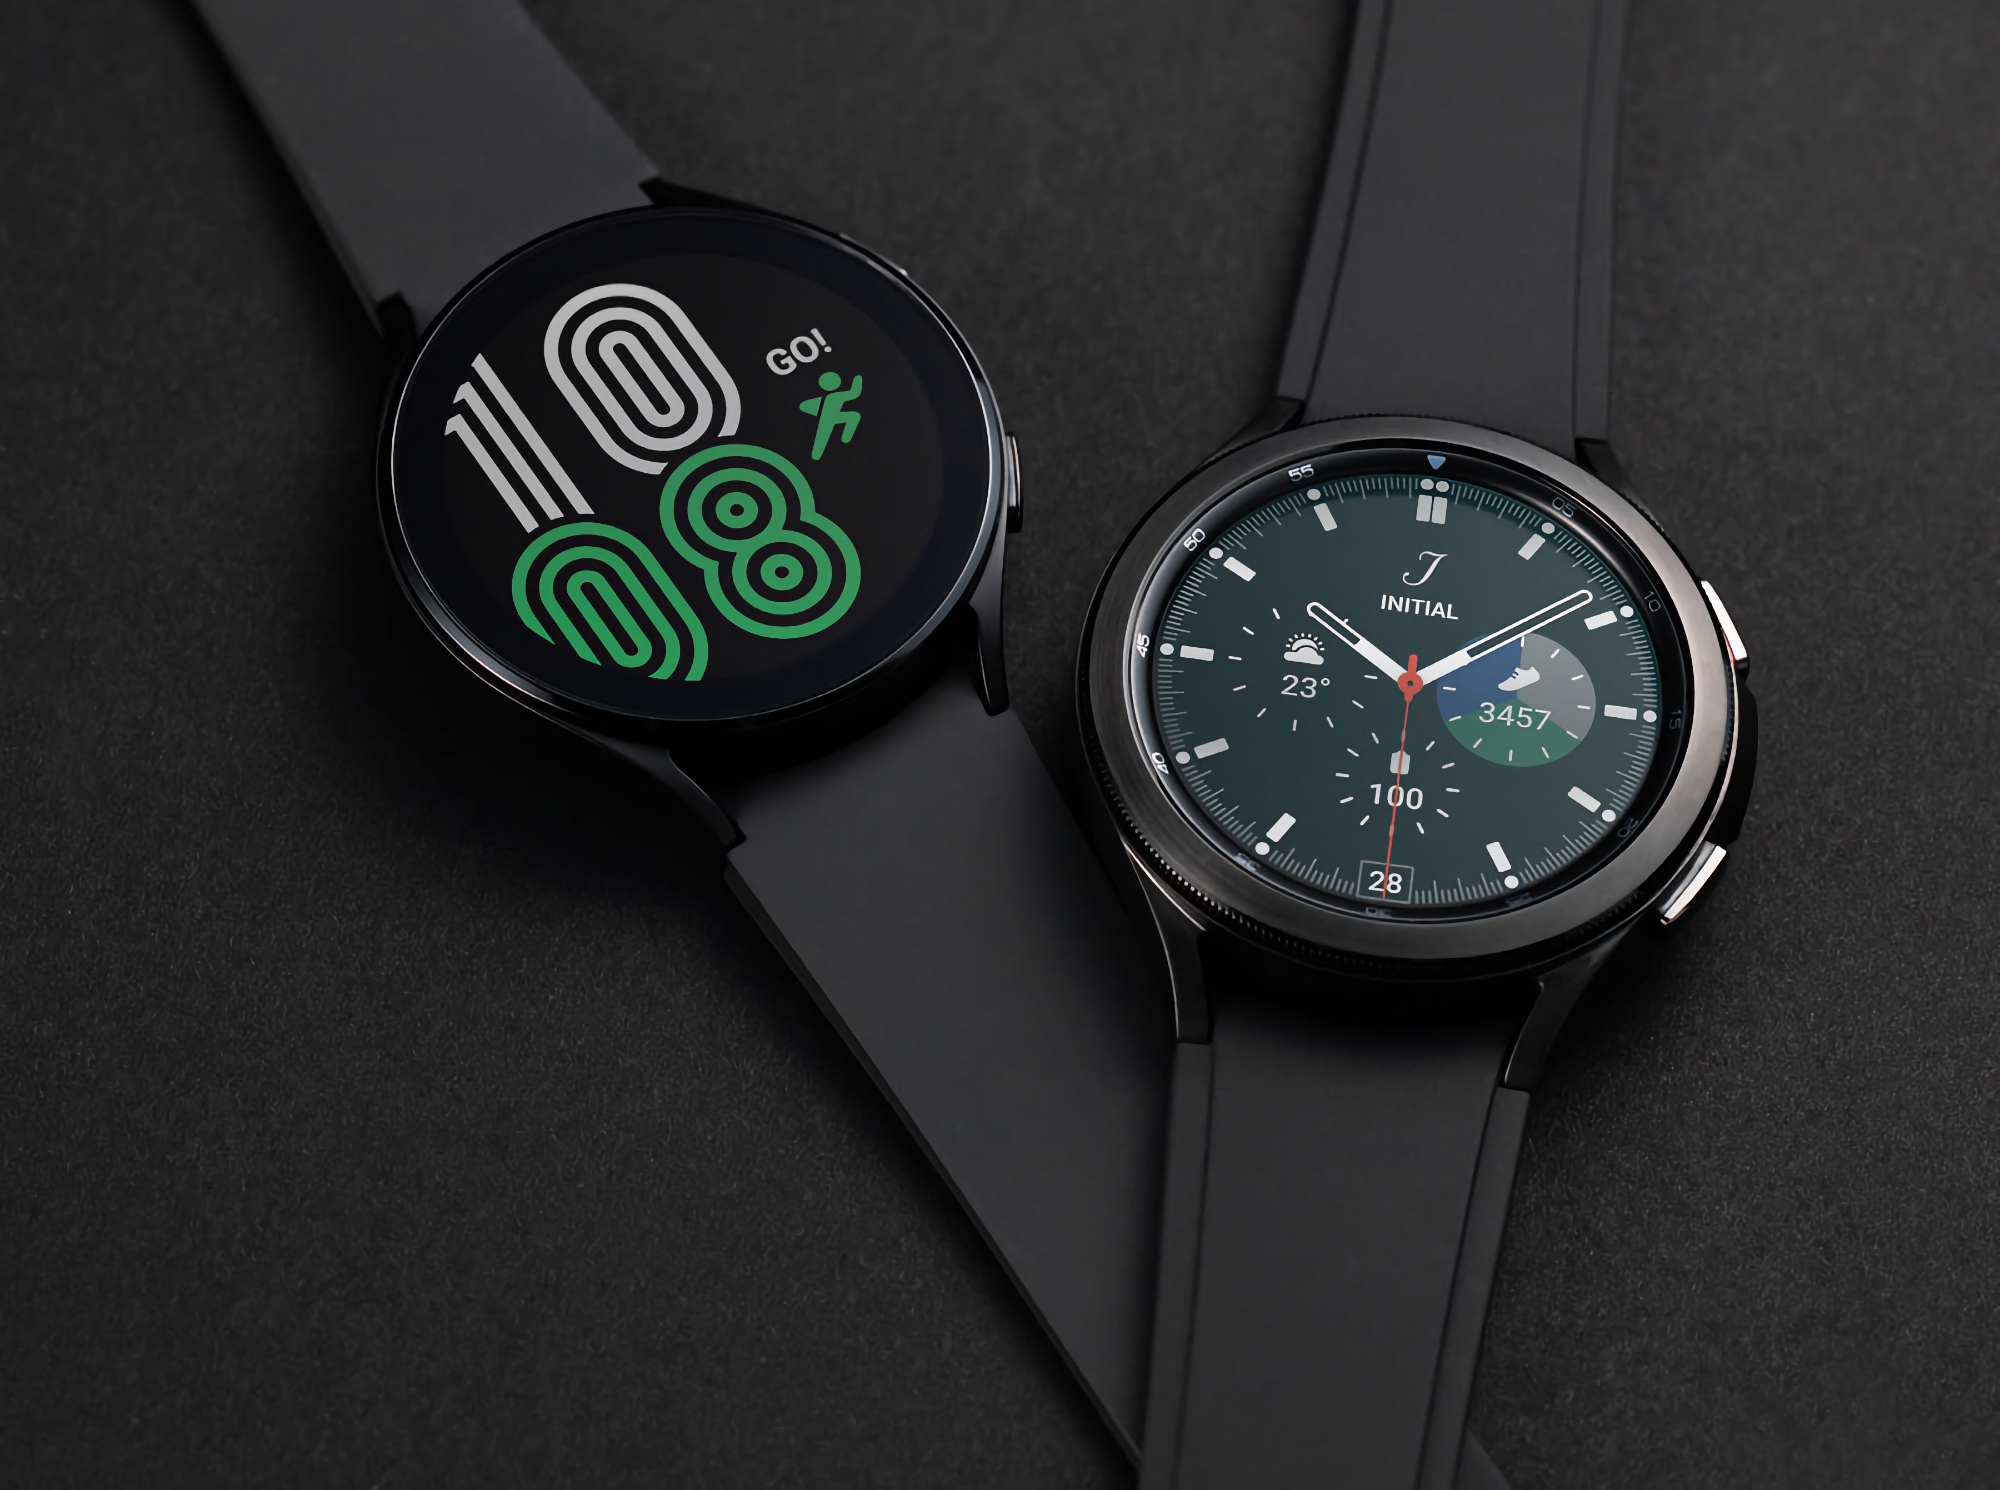 Smartwatch Samsung Galaxy Watch 4 dostaje nowe funkcje dzięki aktualizacji oprogramowania